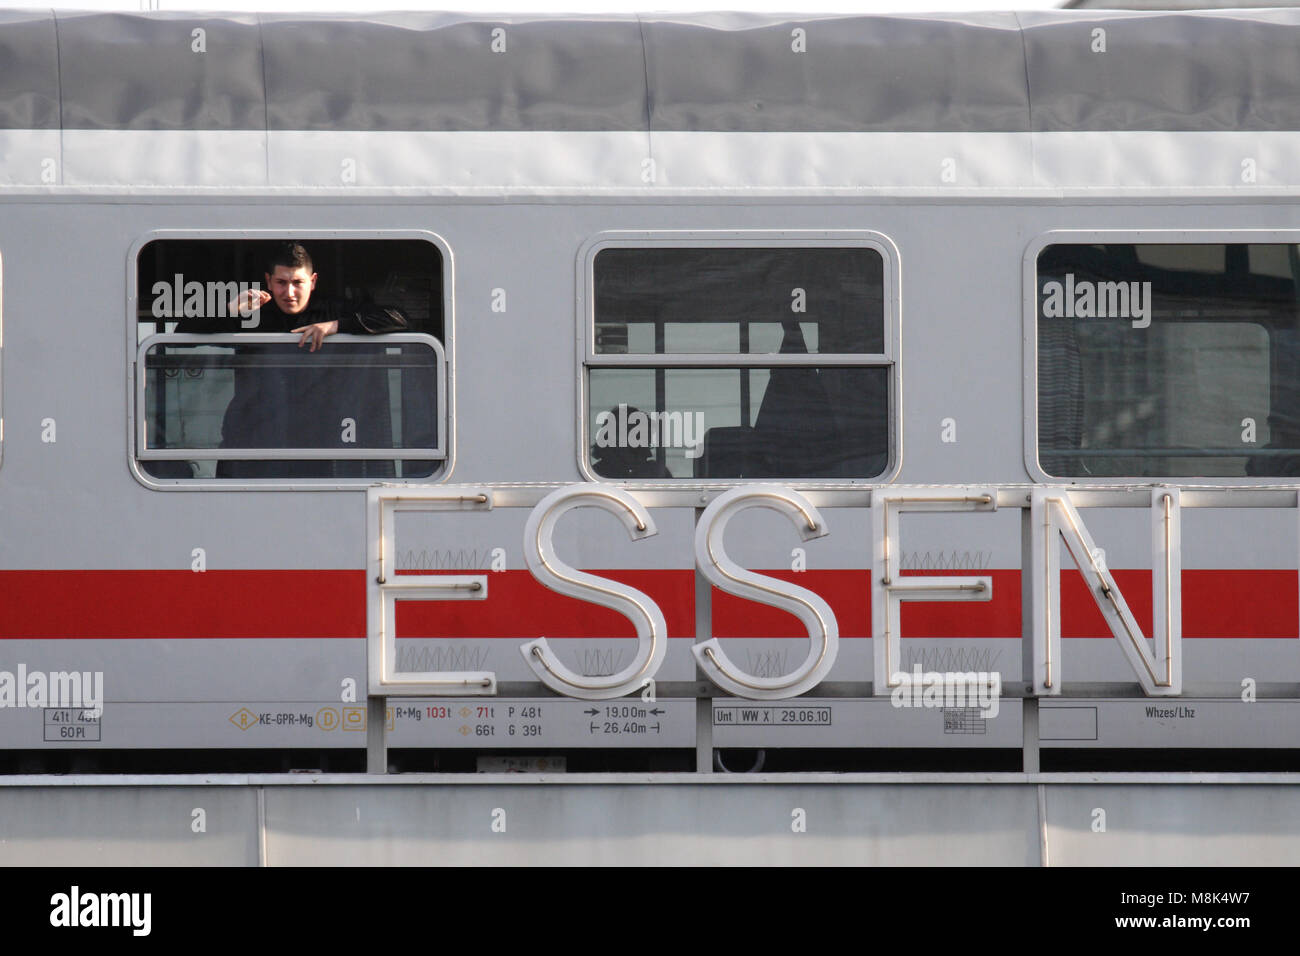 Bahn di Essen, in Germania. Un uomo sta guardando fuori della finestra. Direttamente di fronte al carrello è il nome della stazione di Essen Hauptbahnhof (stazione principale) Foto Stock